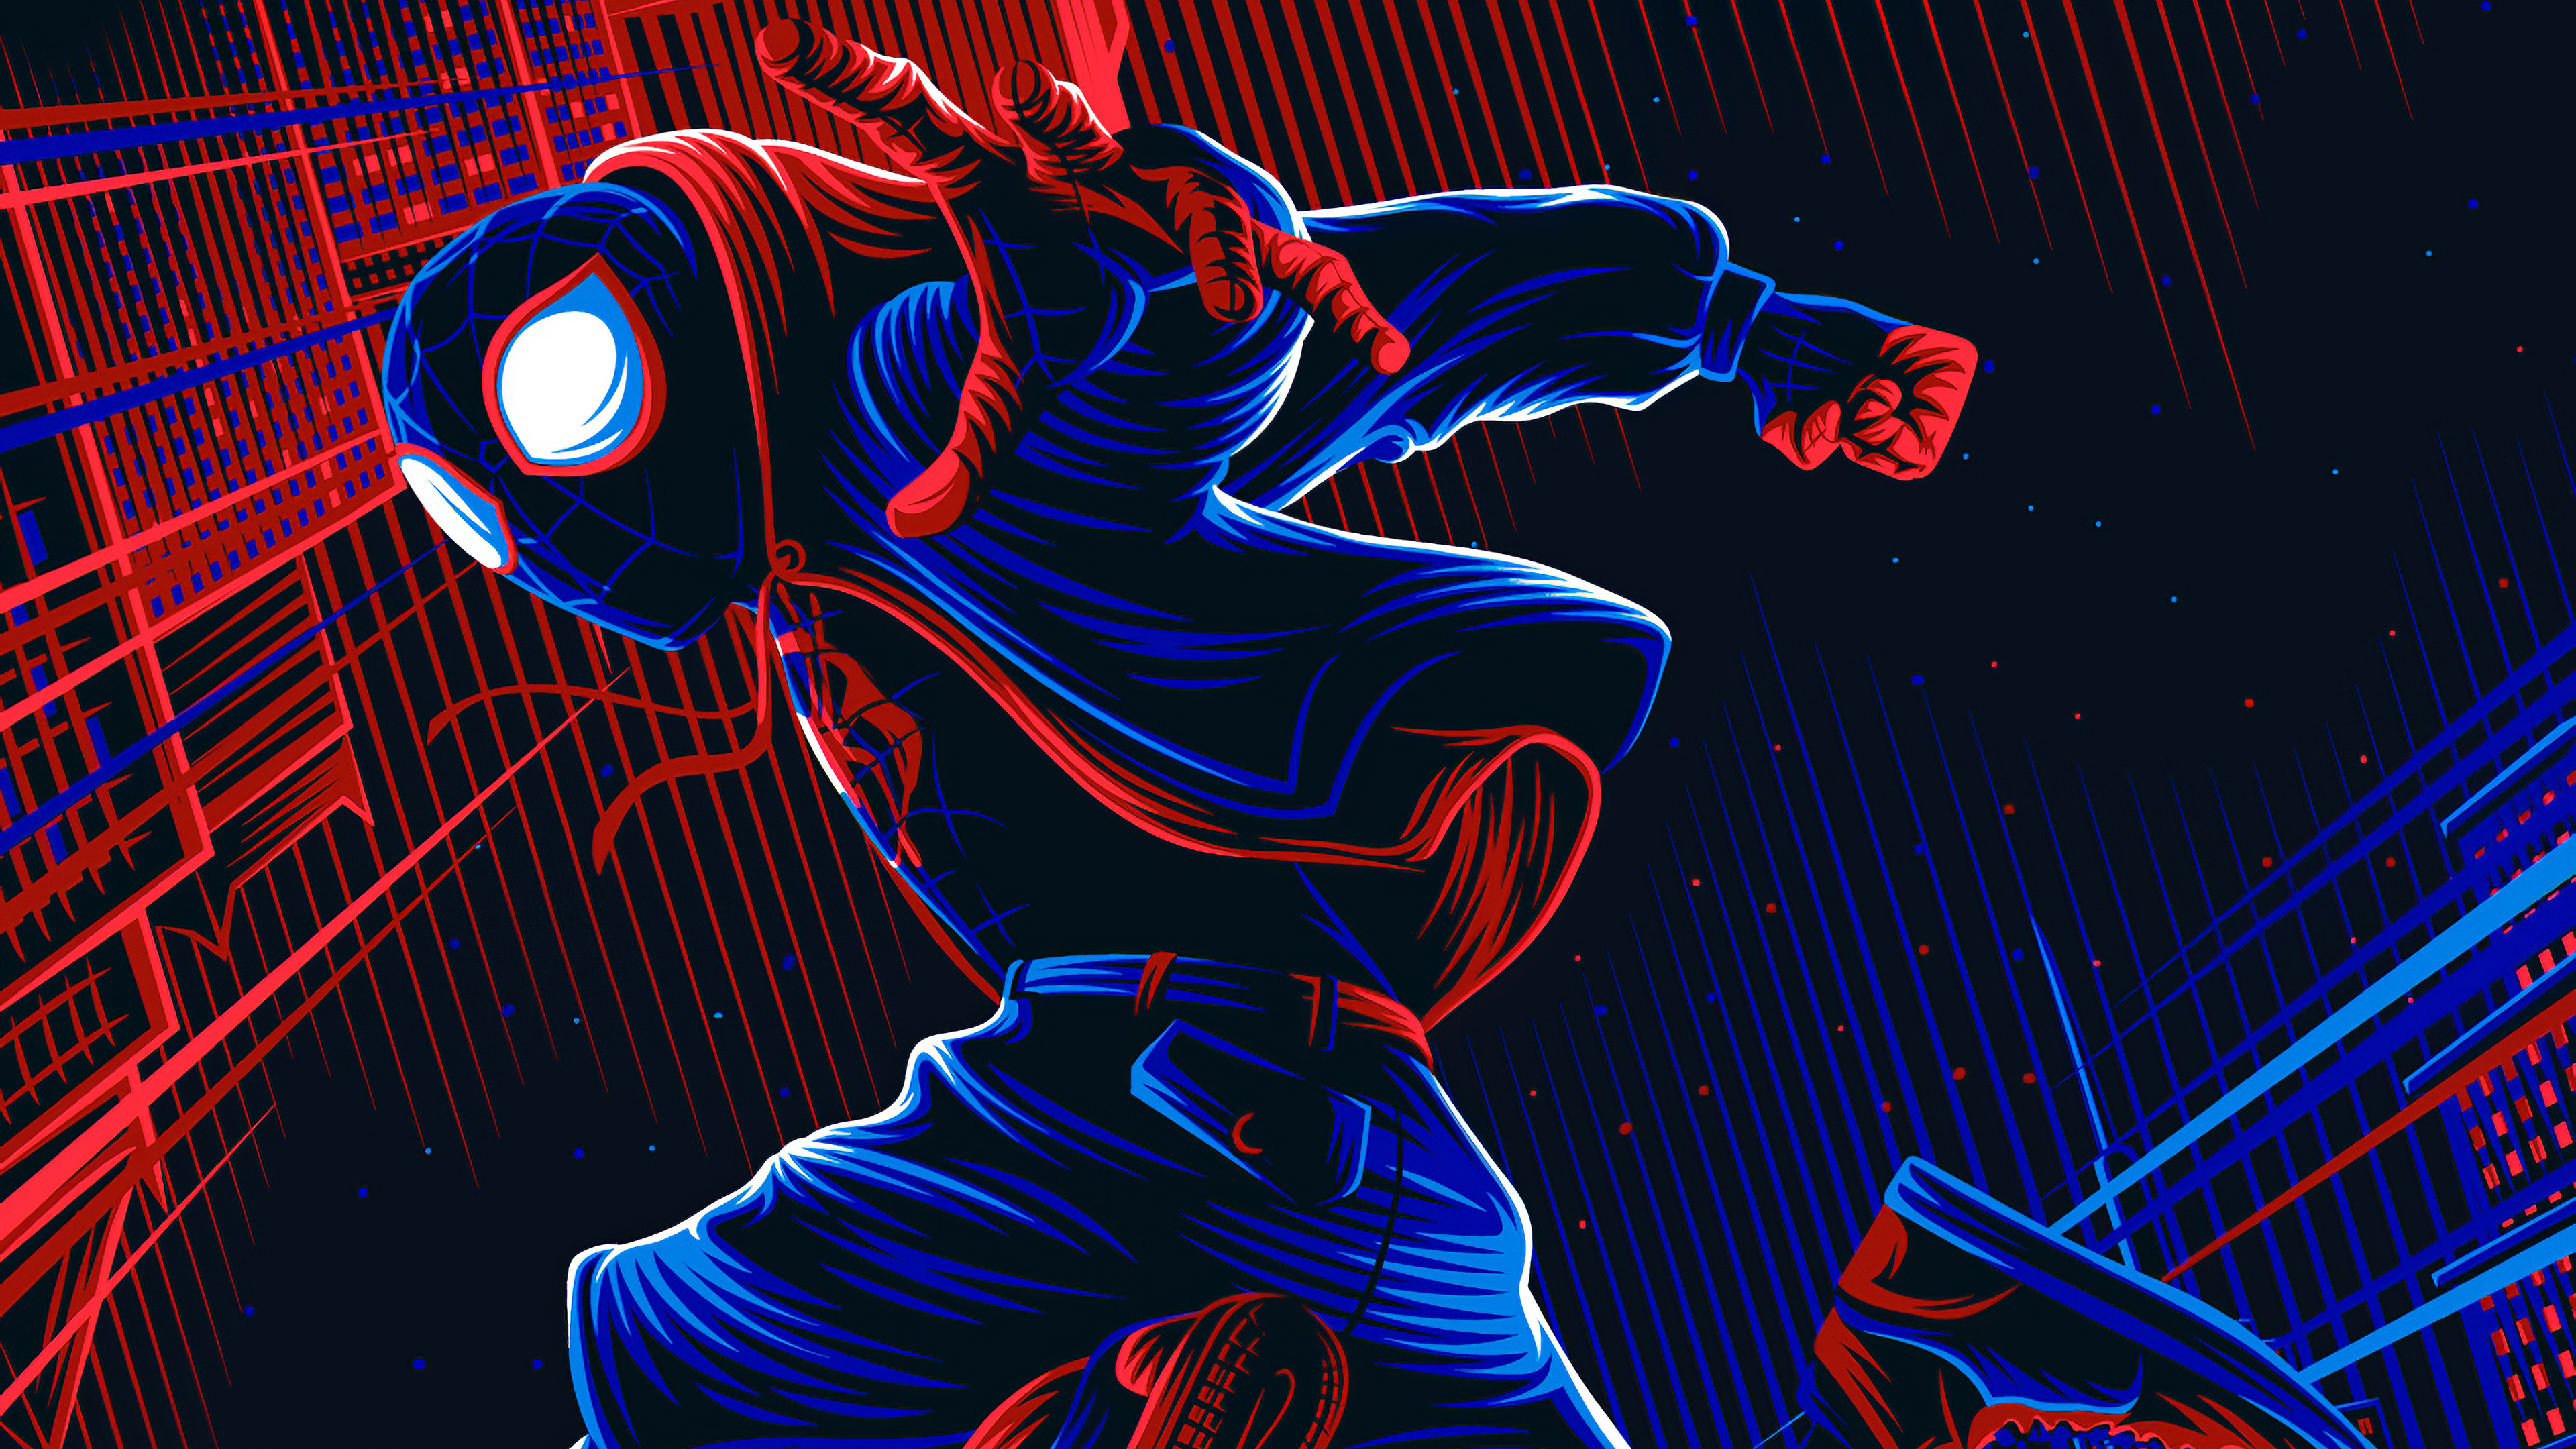 Hình nền Spider-Man 4K Ultra HD là một trong những tác phẩm nghệ thuật độc đáo và đẹp mắt nhất. Sắc nét, chi tiết và rõ ràng, chiếc thiết bị của bạn sẽ trở nên sinh động và đem đến cho bạn những giờ phút giải trí đầy tuyệt vời. Hãy khám phá danh sách không giới hạn các hình nền Spider-Man 4K và chọn lựa cho riêng mình bức ảnh yêu thích nhất!